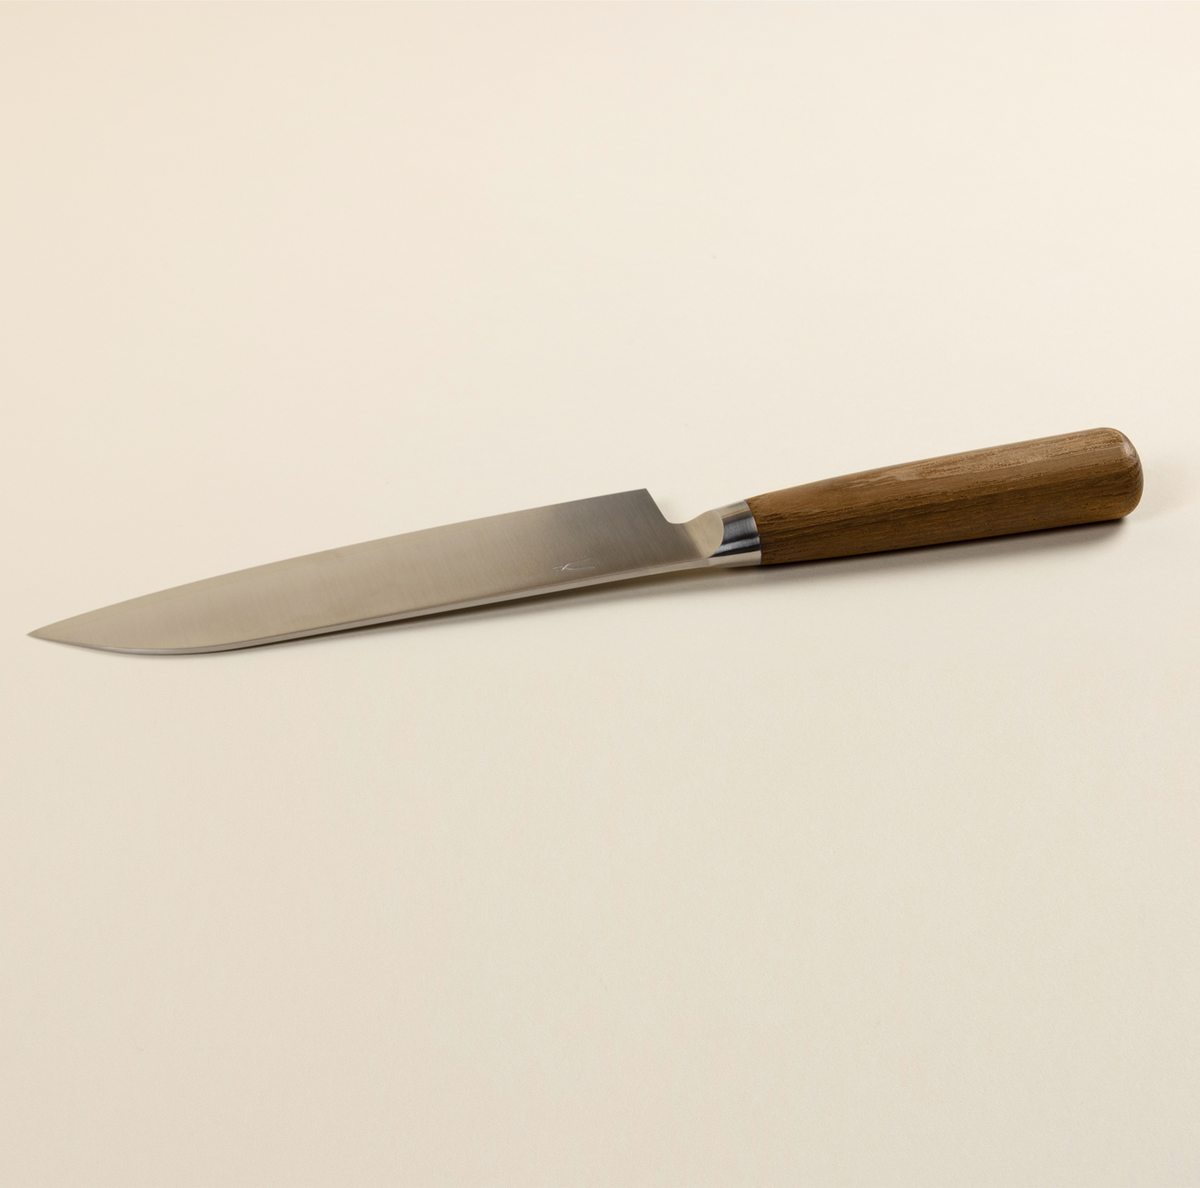 Santoku Knife – The Good Liver